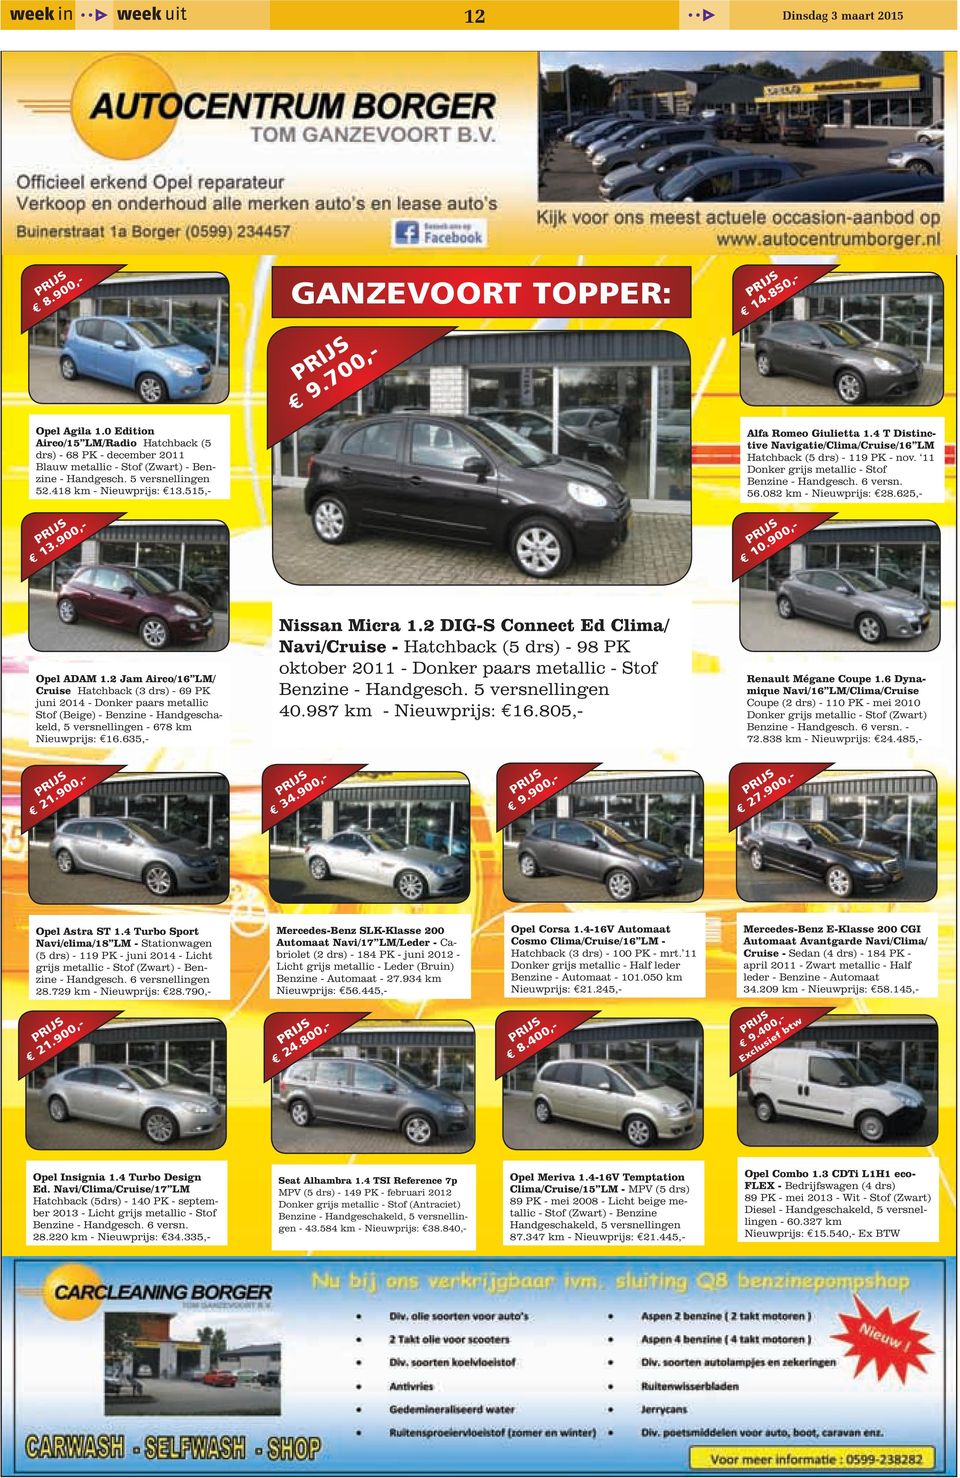 11 Donker grijs metallic - Stof Benzine - Handgesch. 6 versn. 56.082 km - Nieuwprijs: 28.625,- prijs 13.900,- prijs 10.900,- Opel ADAM 1.